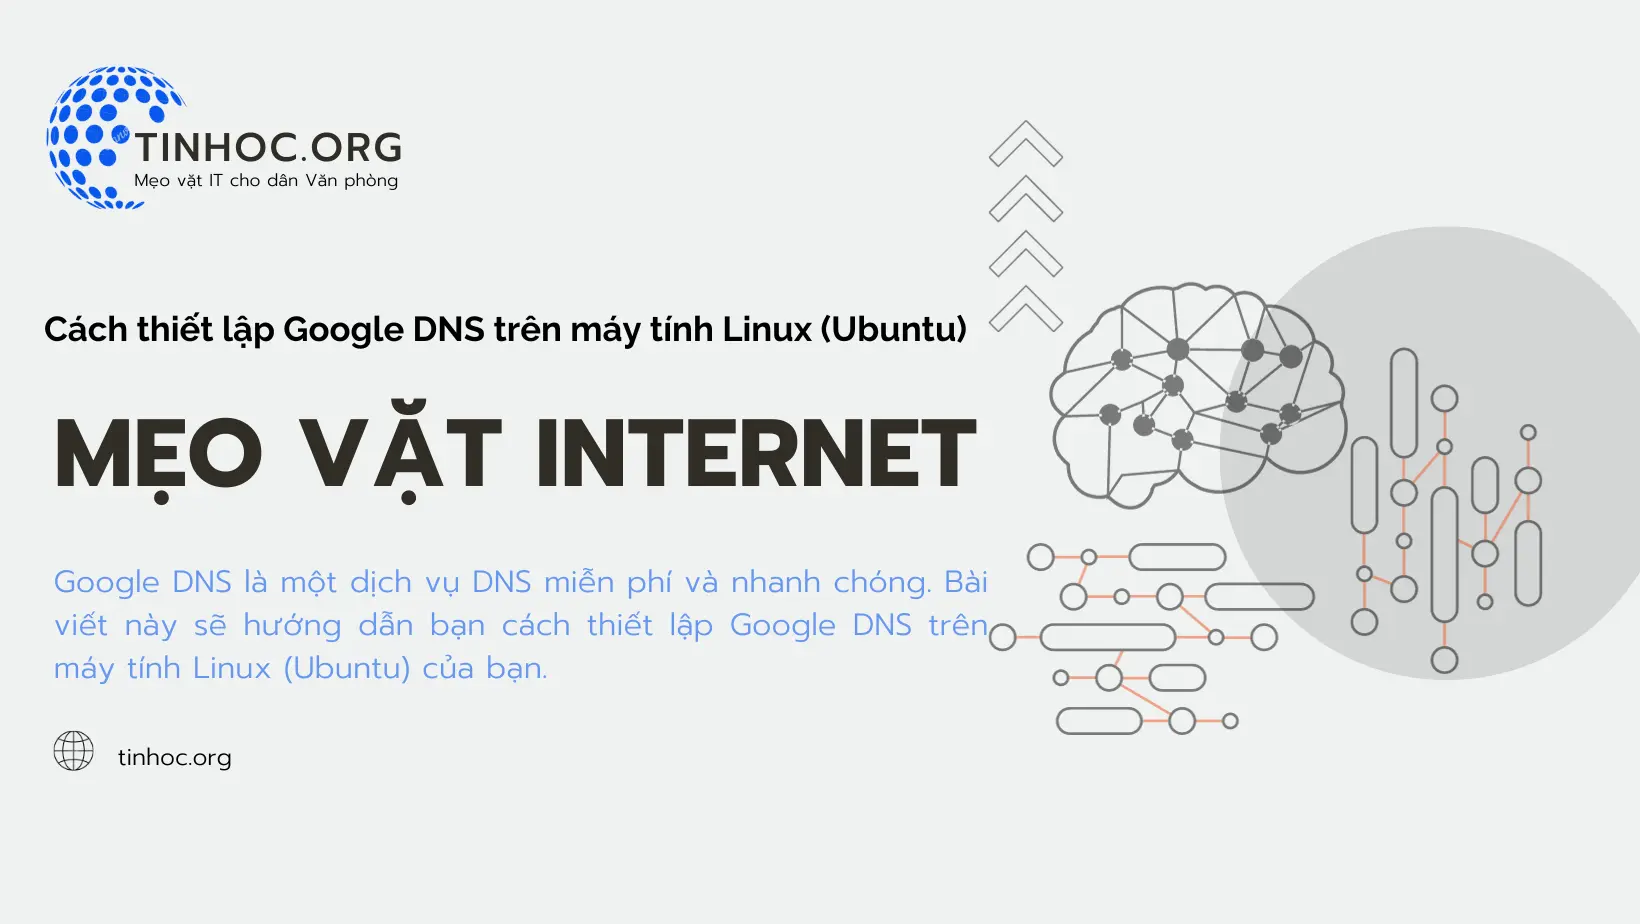 Google DNS là một dịch vụ DNS miễn phí và nhanh chóng. Bài viết này sẽ hướng dẫn bạn cách thiết lập Google DNS trên máy tính Linux (Ubuntu) của bạn.